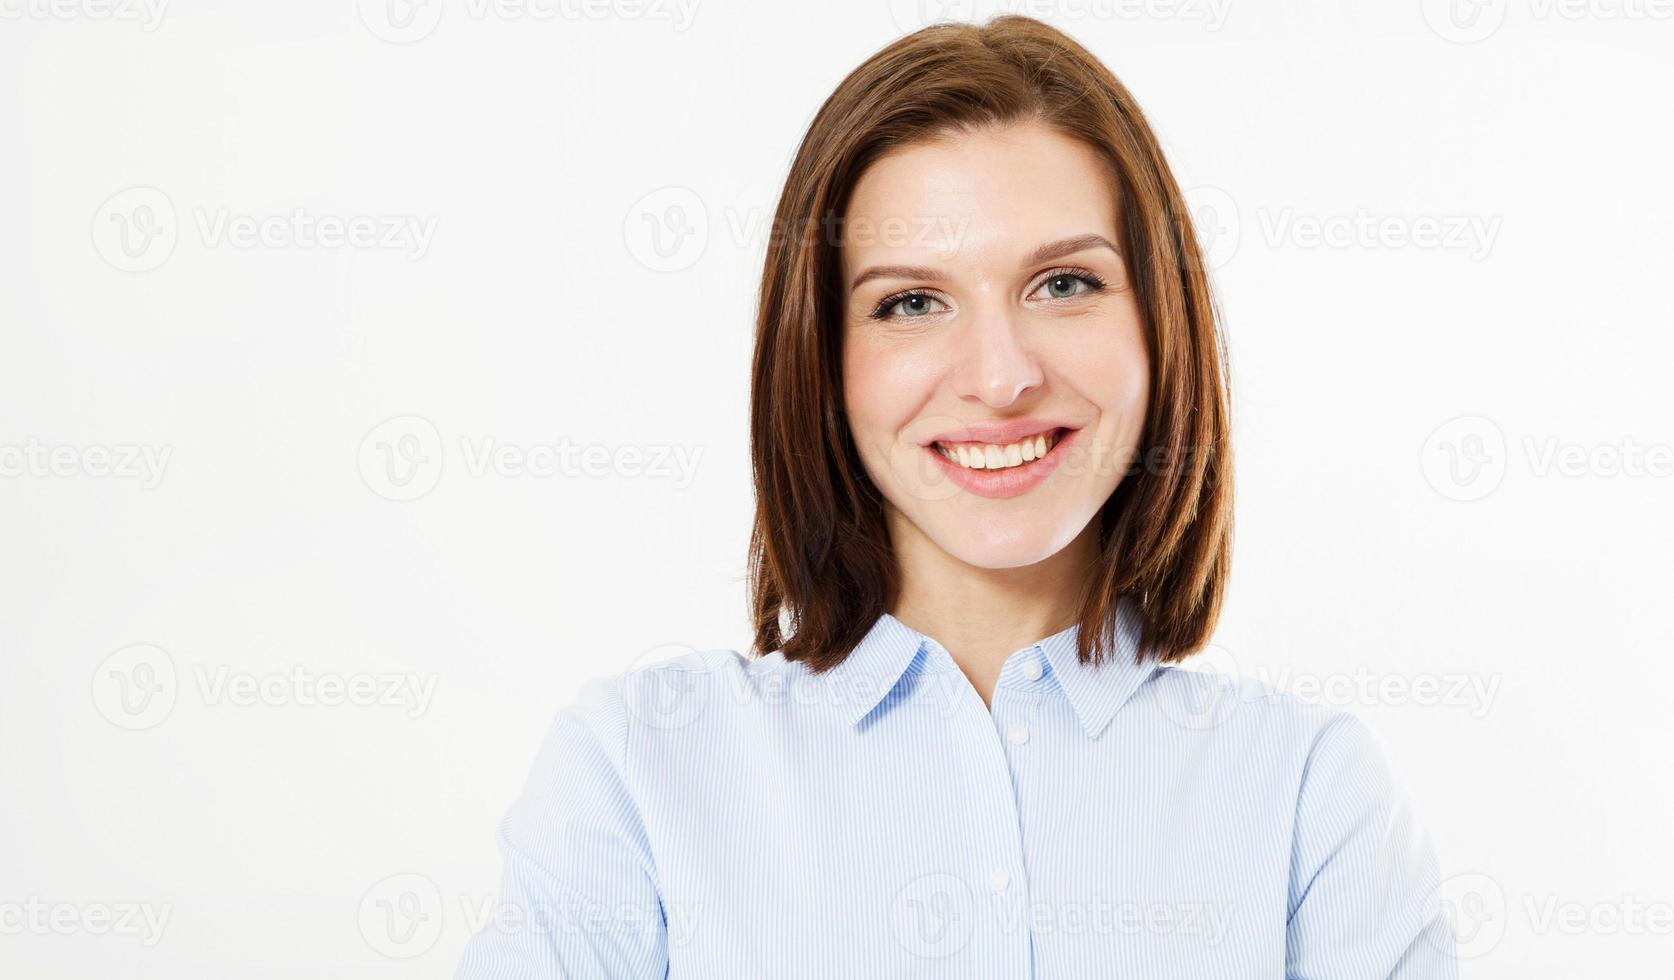 hermosa sonrisa cara de mujer primer plano retrato joven estudio en blanco, chica morena foto